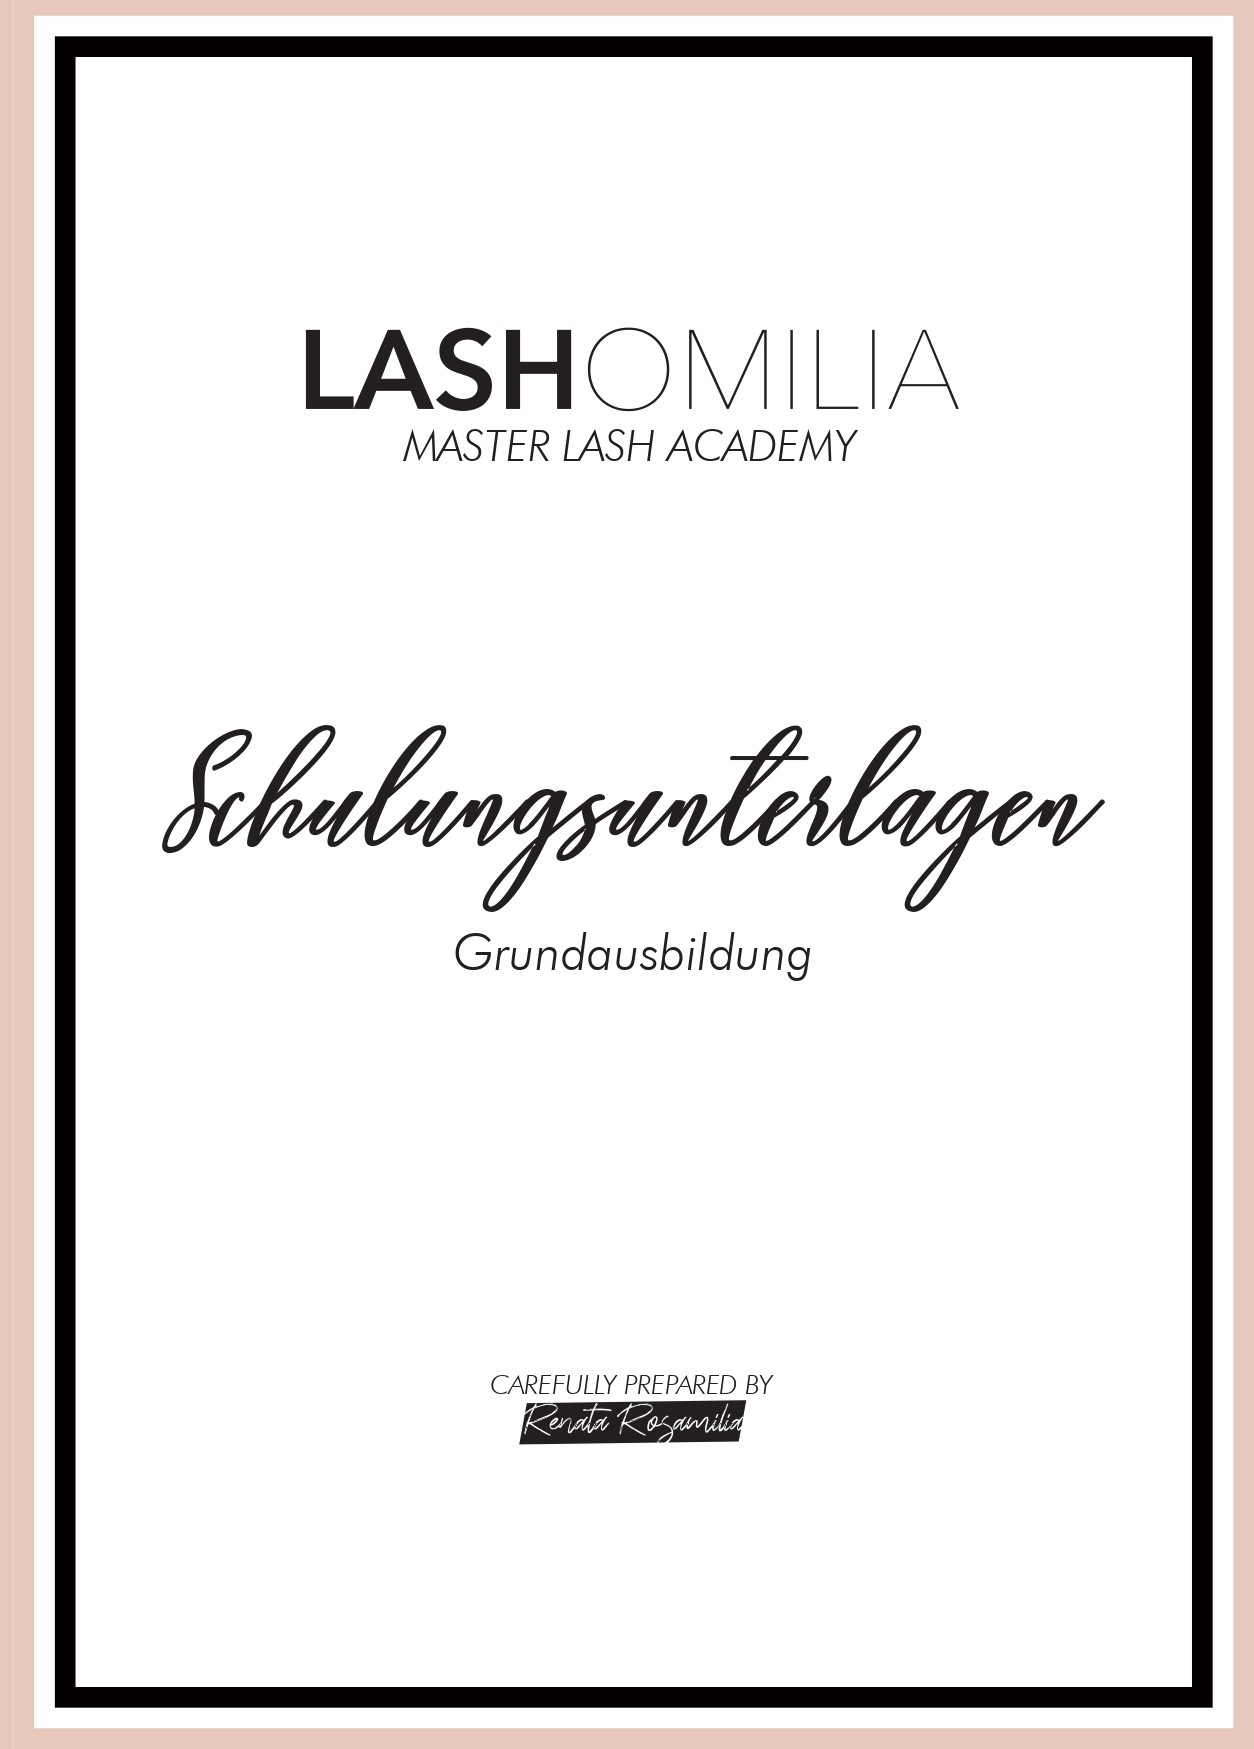 Lashomilia Schulungsunterlagen  Grundausbildung 